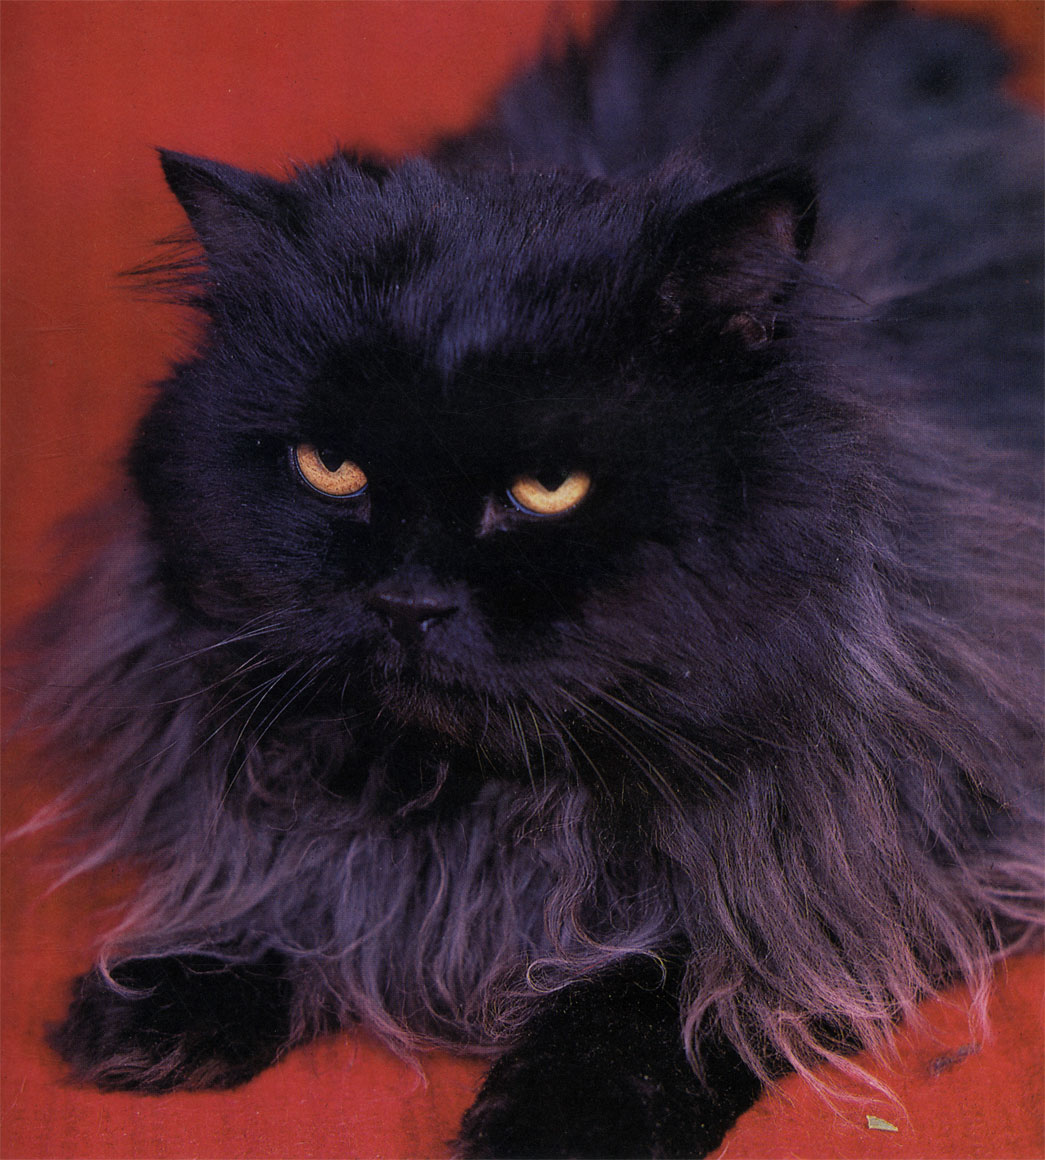 Темный окрас придает персидским кошкам мрачноватый вид. Но внешность бывает обманчива. Как правило, эти животные такие же приветливые, как и короткошерстные собратья